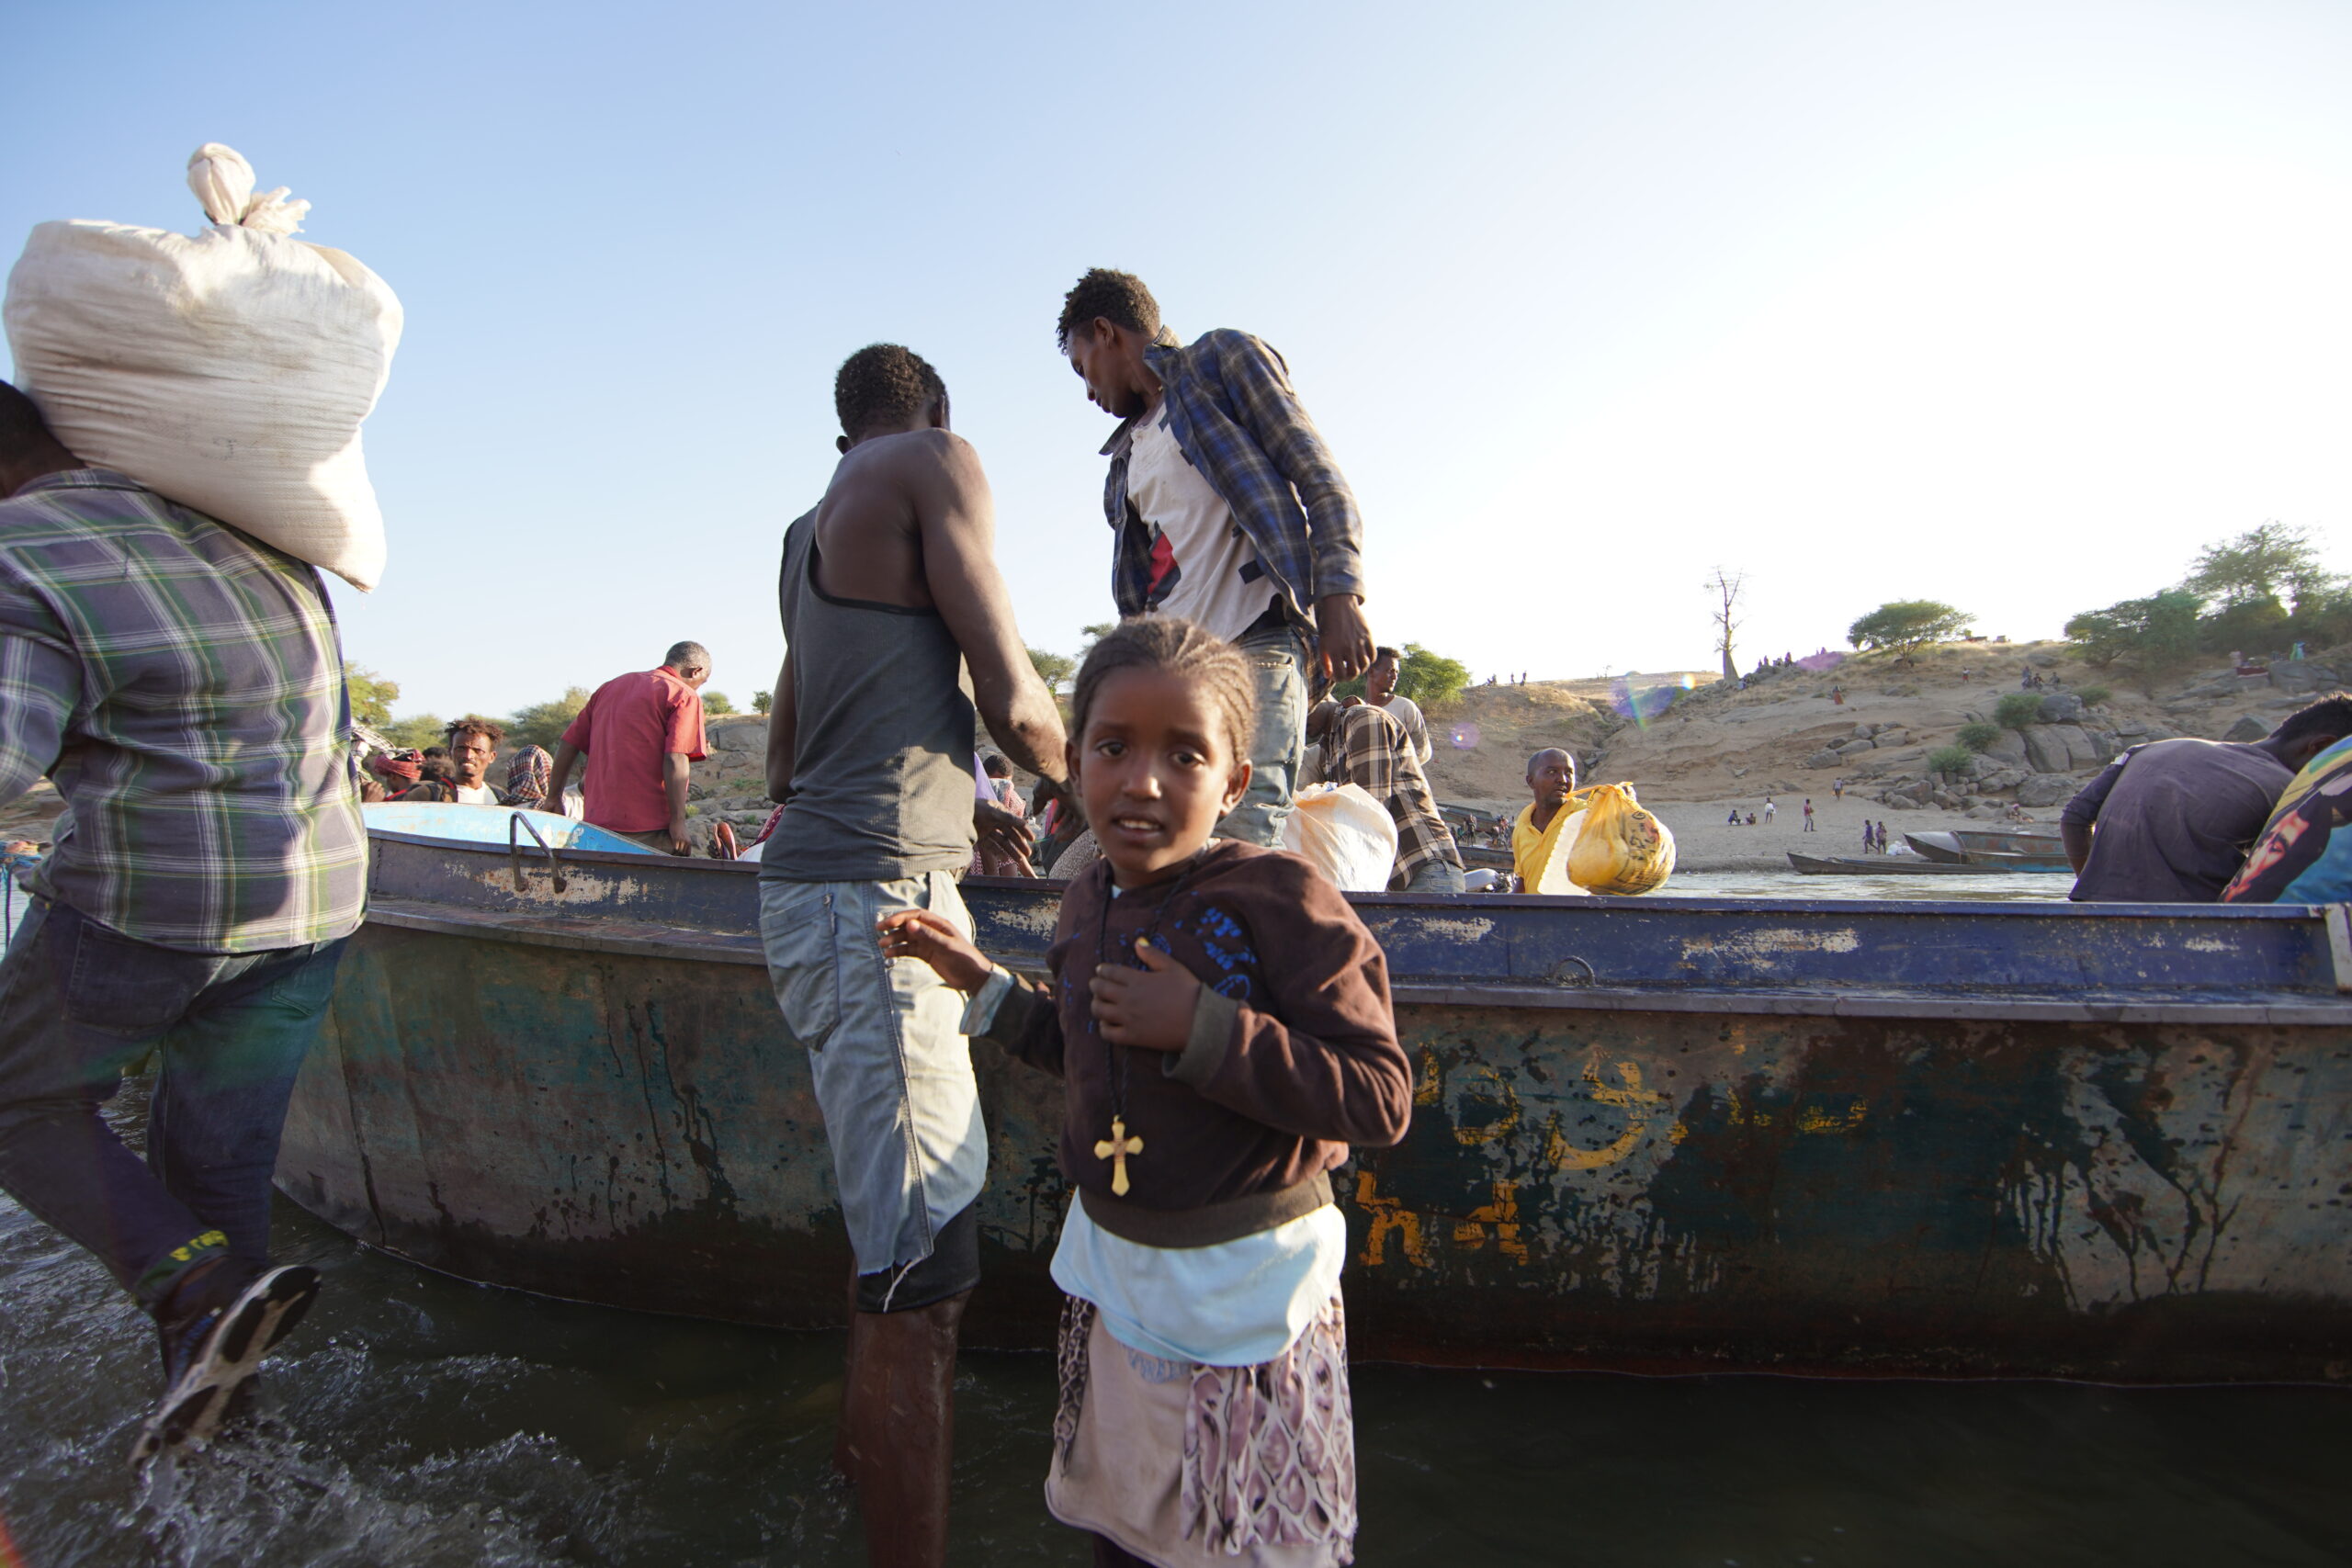 Des réfugiés éthiopiens ayant fui les violences dans la région du Tigré déchargent un bateau sur la rivière Tekezé, après avoir traversé la frontière soudanaise près de Hamdayet.